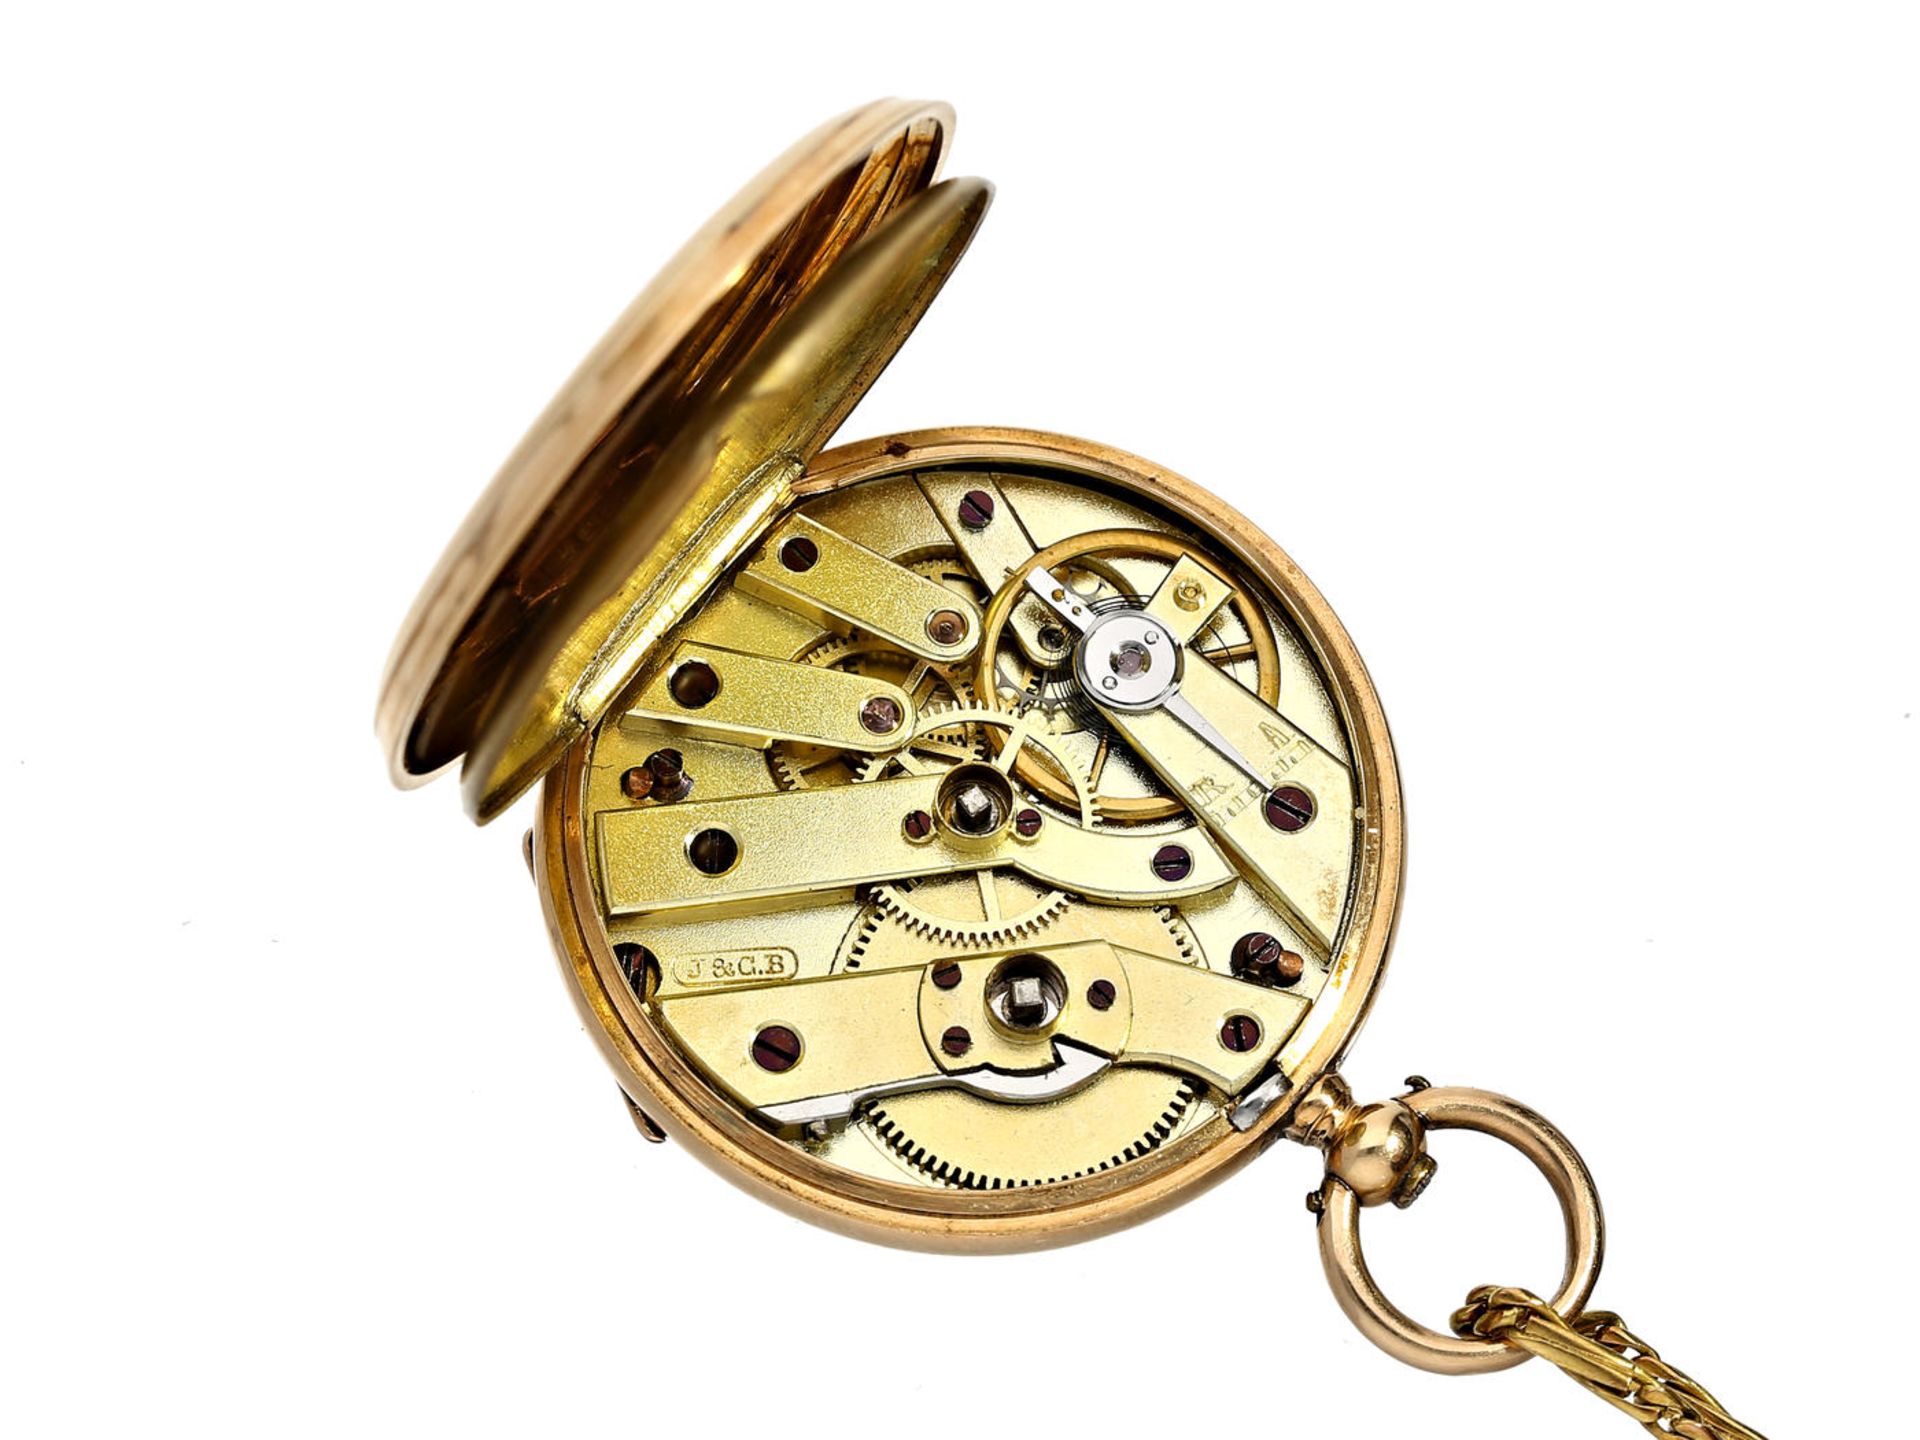 Taschenuhr/Anhängeuhr: feine Damenuhr mit dazugehöriger goldener Uhrenkette, signiert J & C.B - Bild 2 aus 3